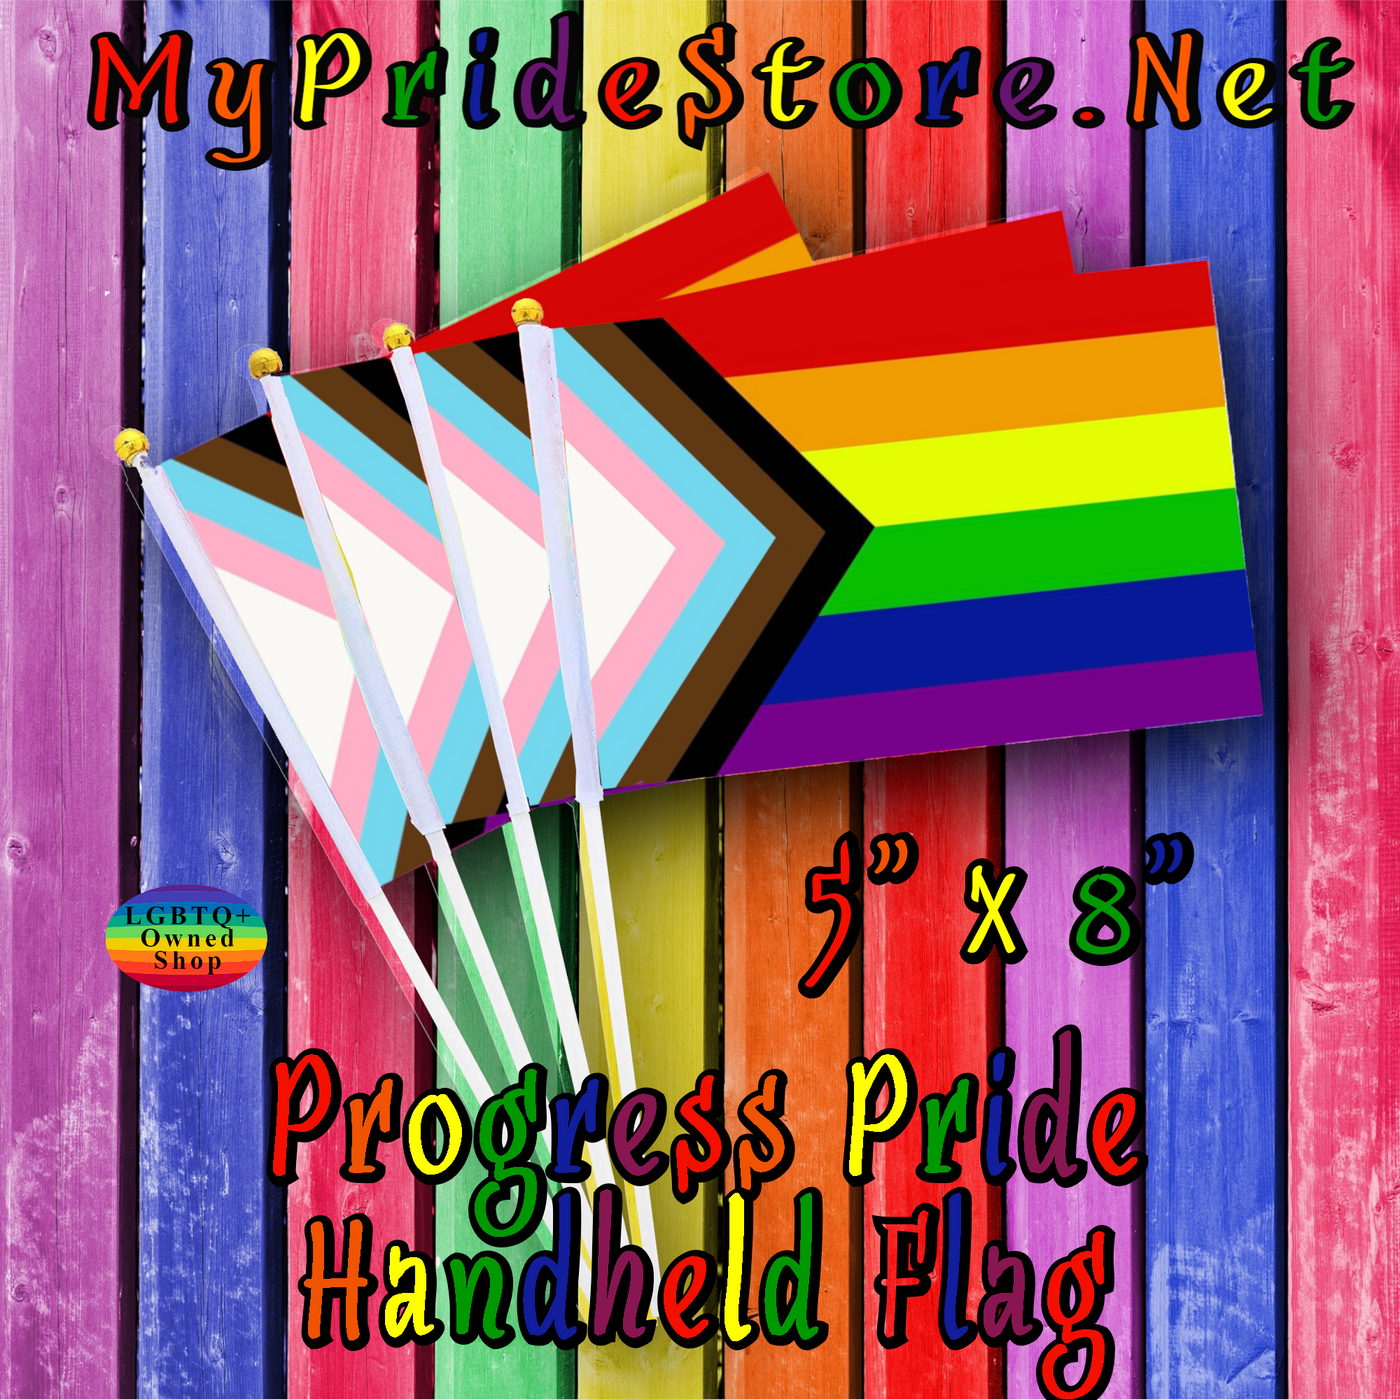 Handheld Pride flags